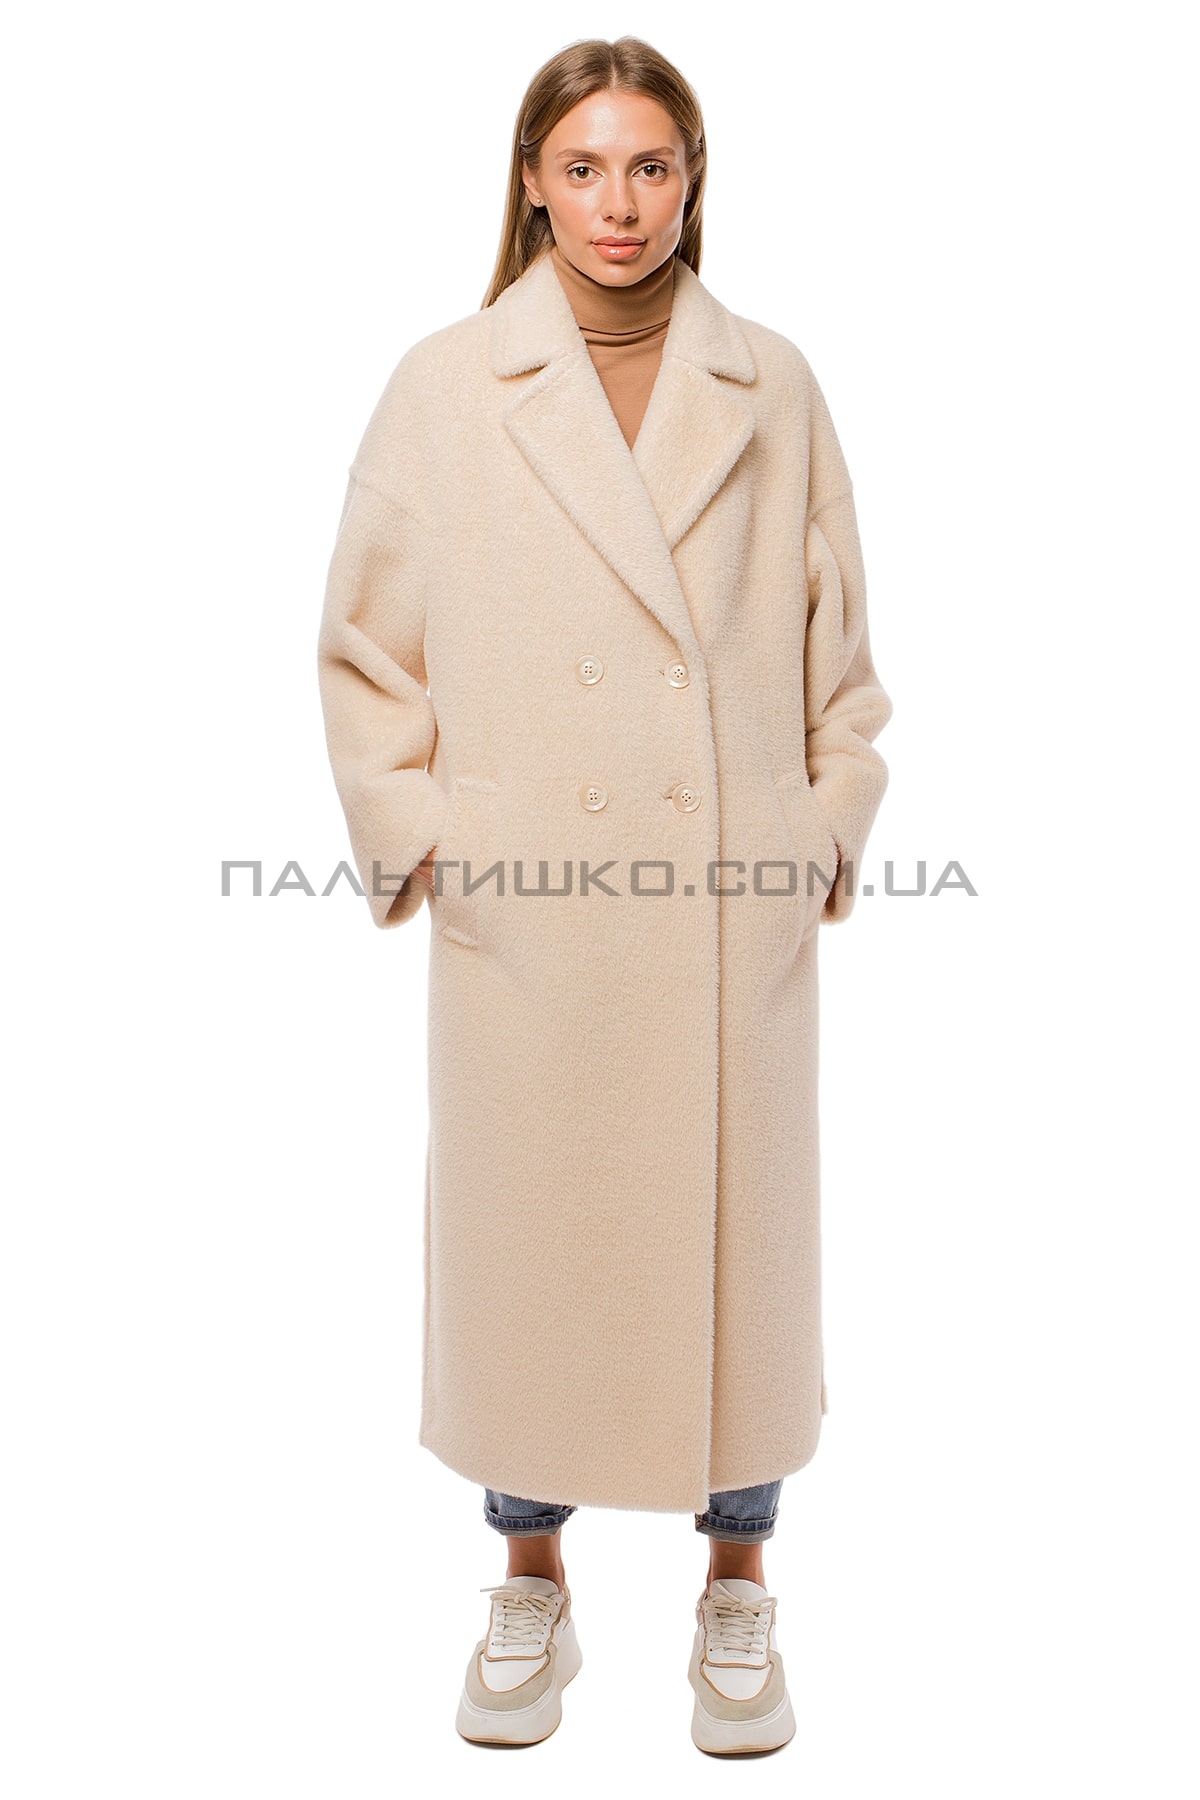  Женское пальто шуба кремовое